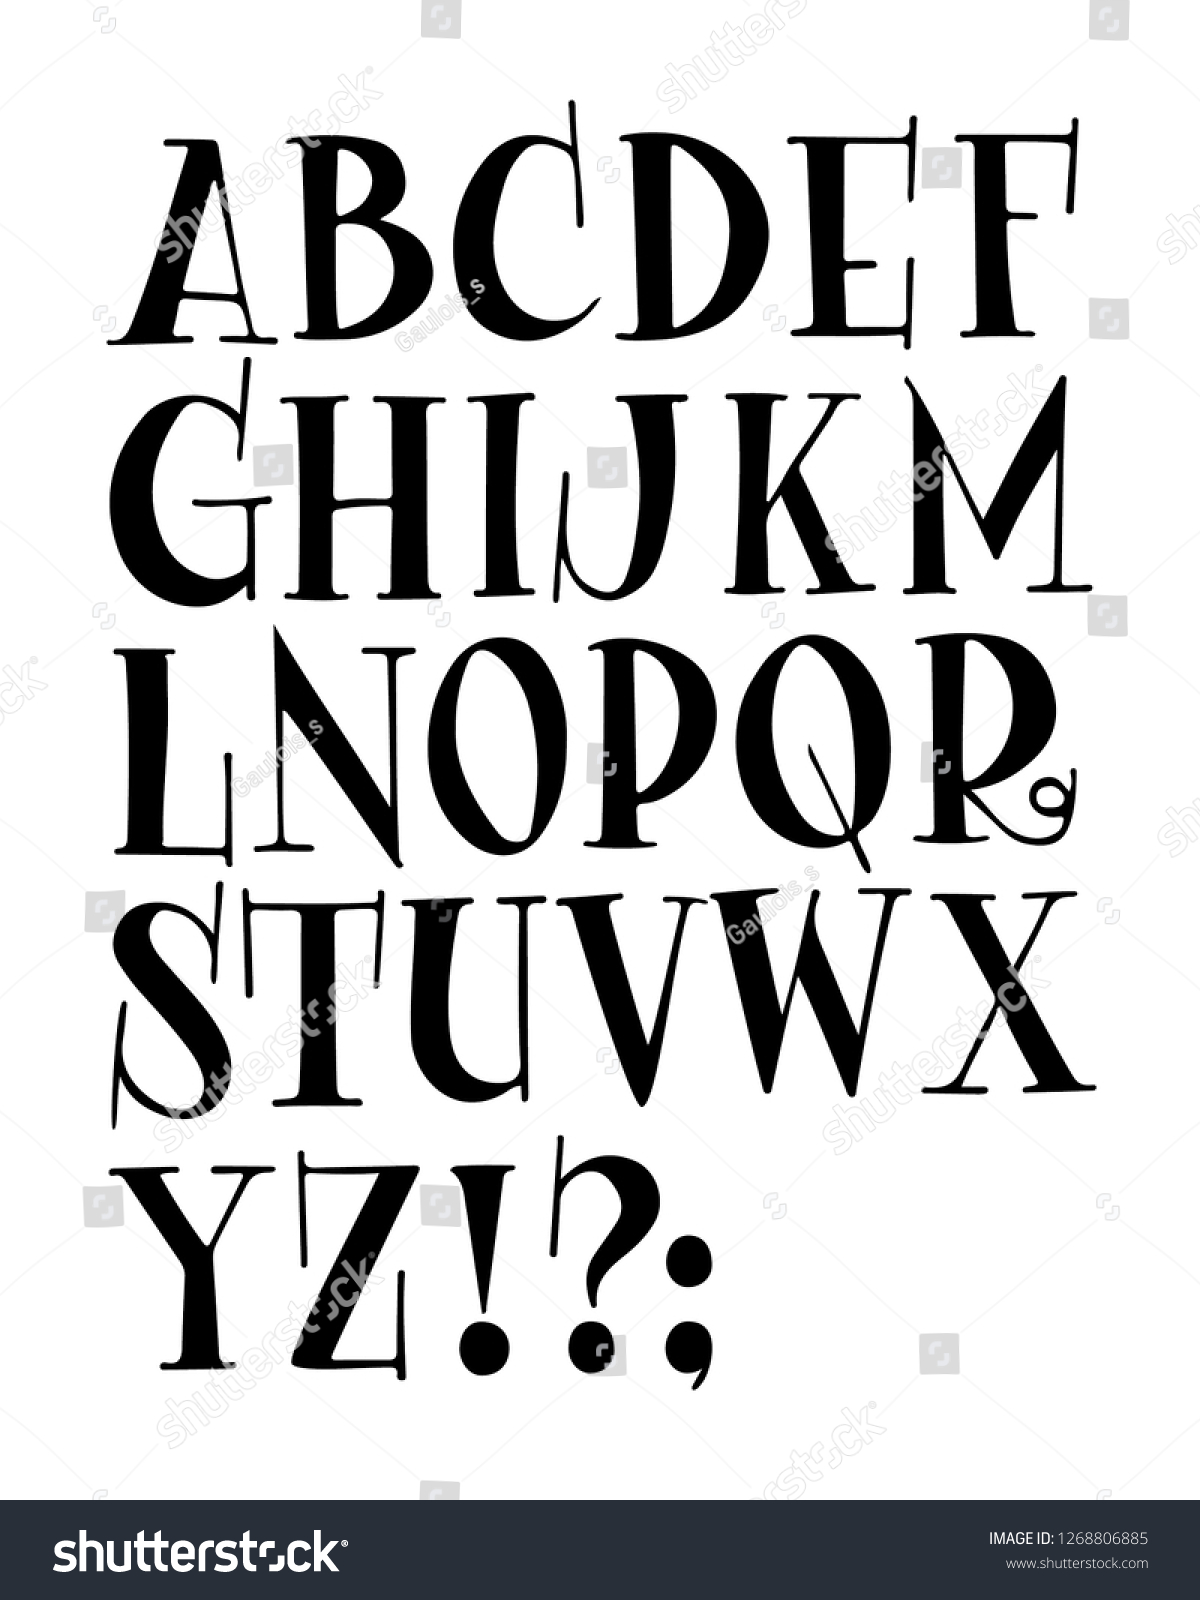 black and white hand lettering alphabet design, handwritten brus Stock  Vector Image & Art - Alamy